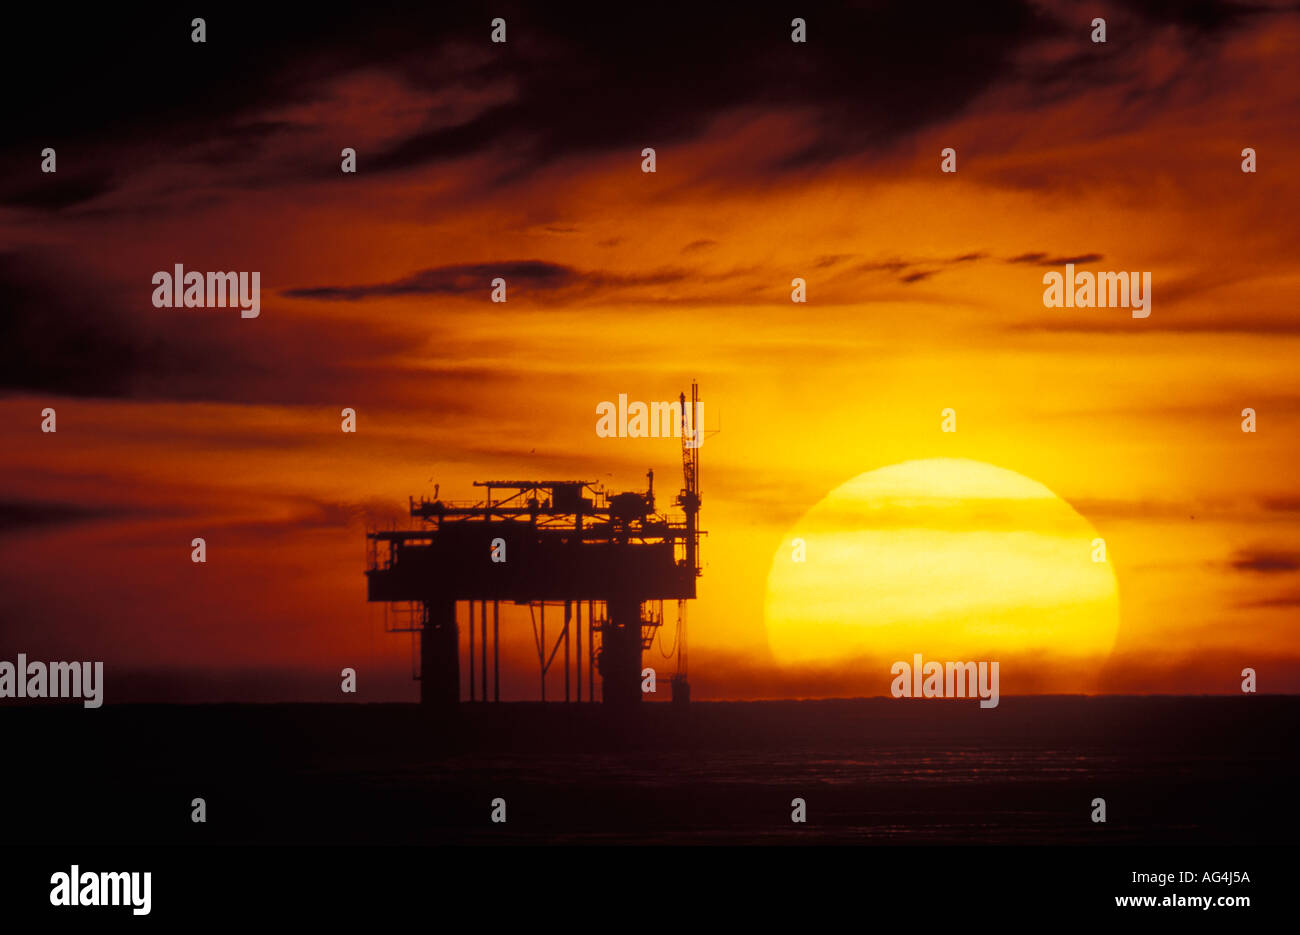 A massive sun sets near a offshore oil rig off the Santa Barbara coastline in Southern California Stock Photo